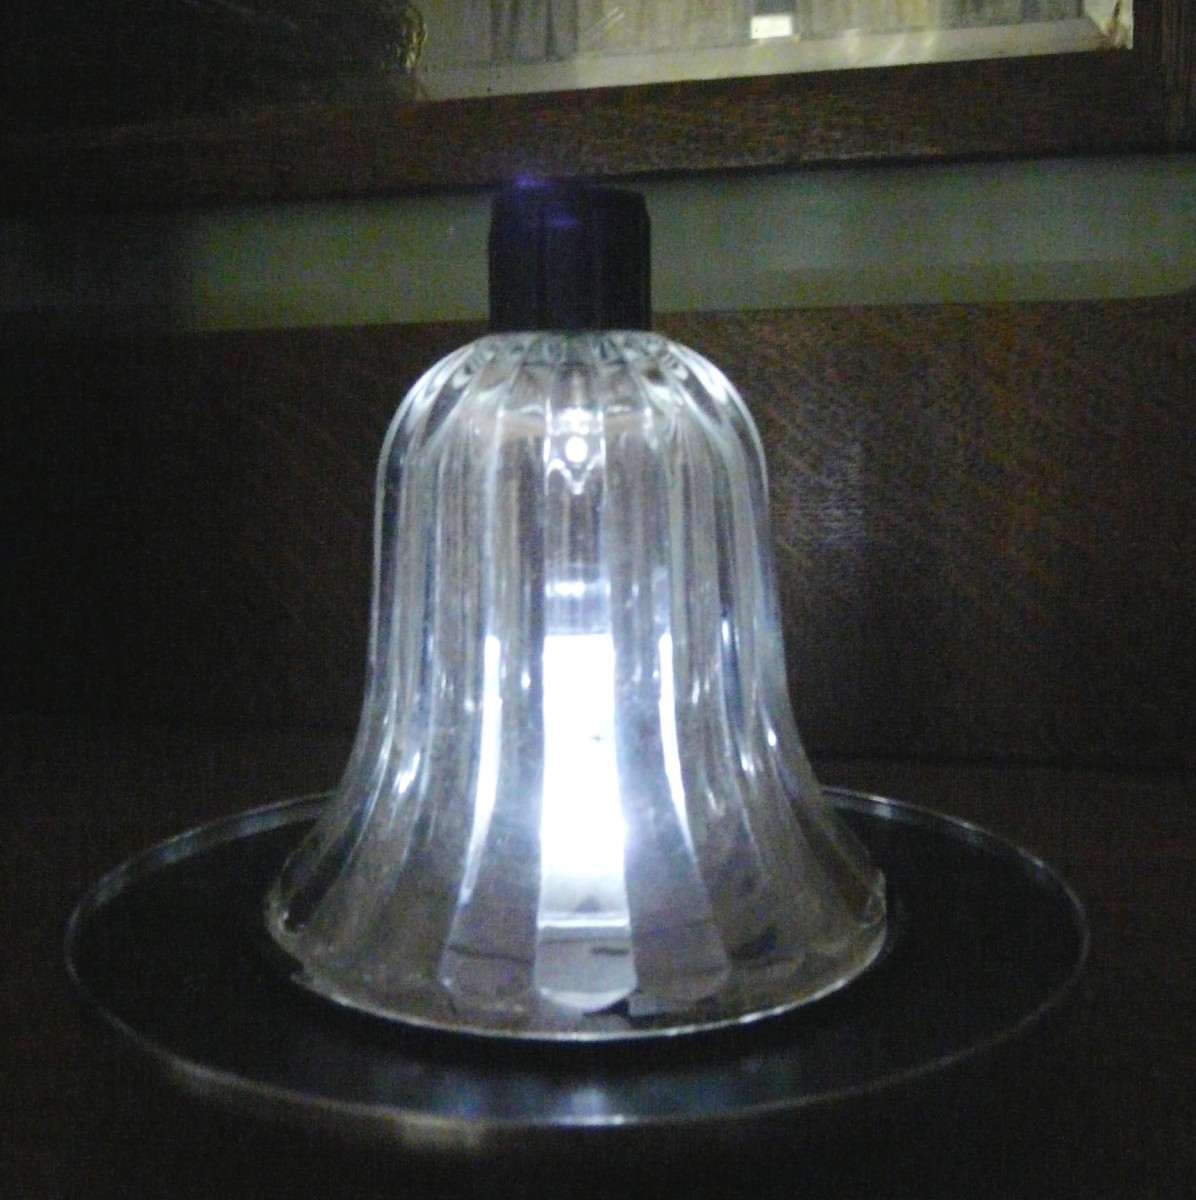 Solar lamp used for emergency light